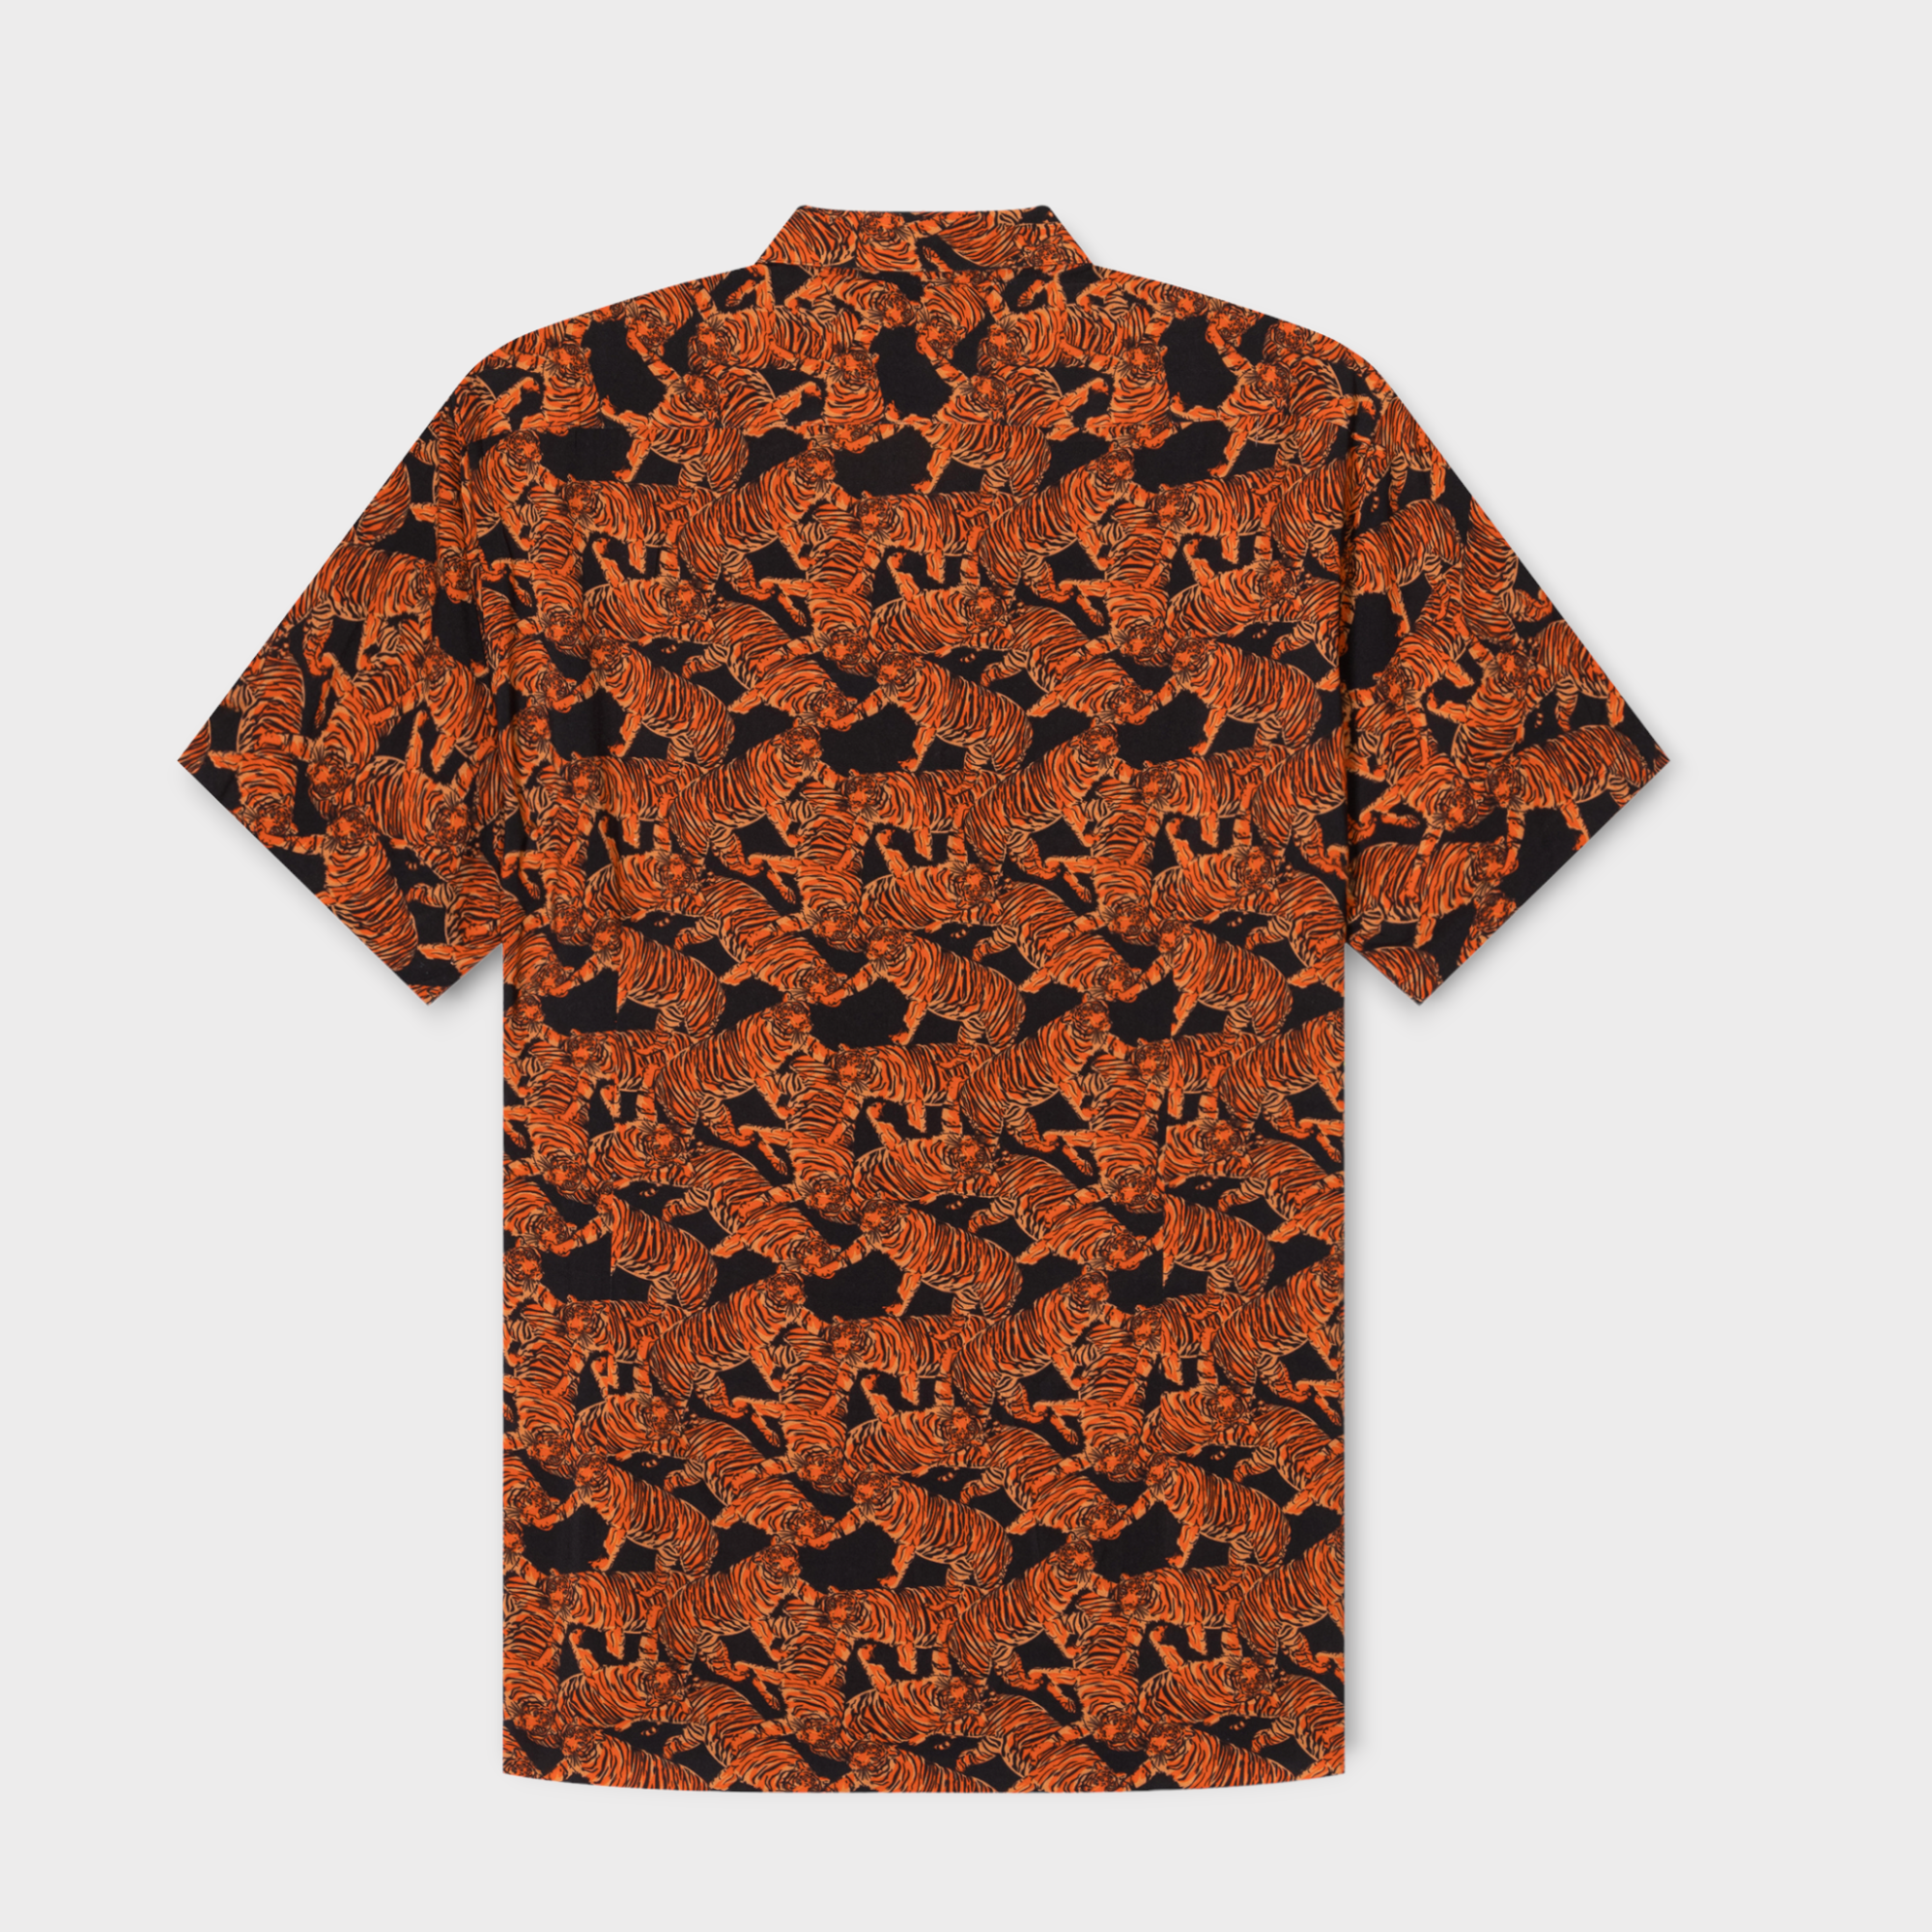 Panthera Tigris Shirt